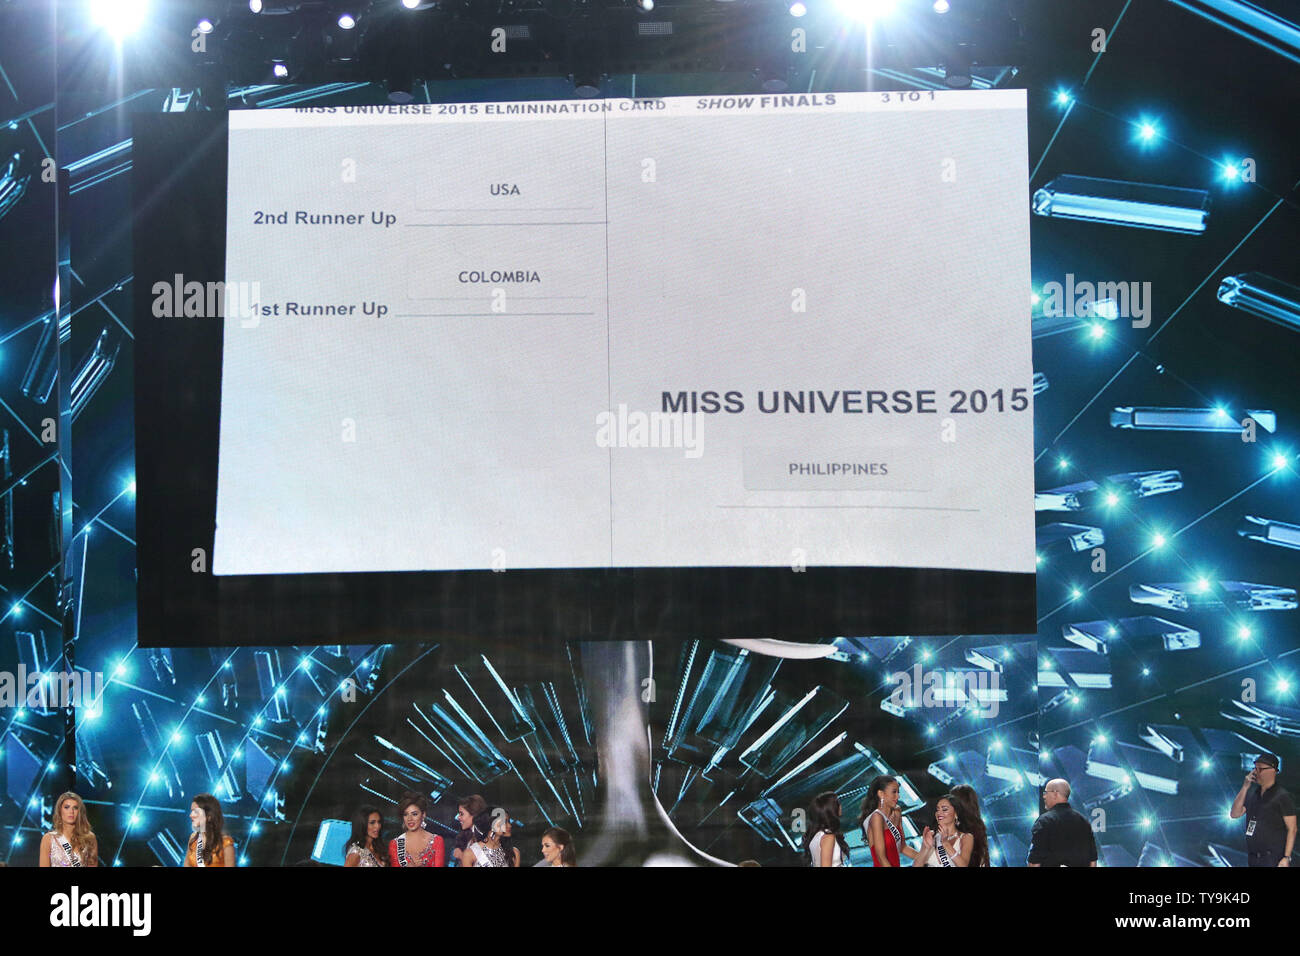 Accueillir Steve Harvey's carte résultats officiels indiqués sur grand écran après la diffusion de la concurrence le défilé de Miss Univers au Planet Hollywood Resort & Casino à Las Vegas, Nevada le 20 décembre 2015. Photo de James Atoa/UPI Banque D'Images